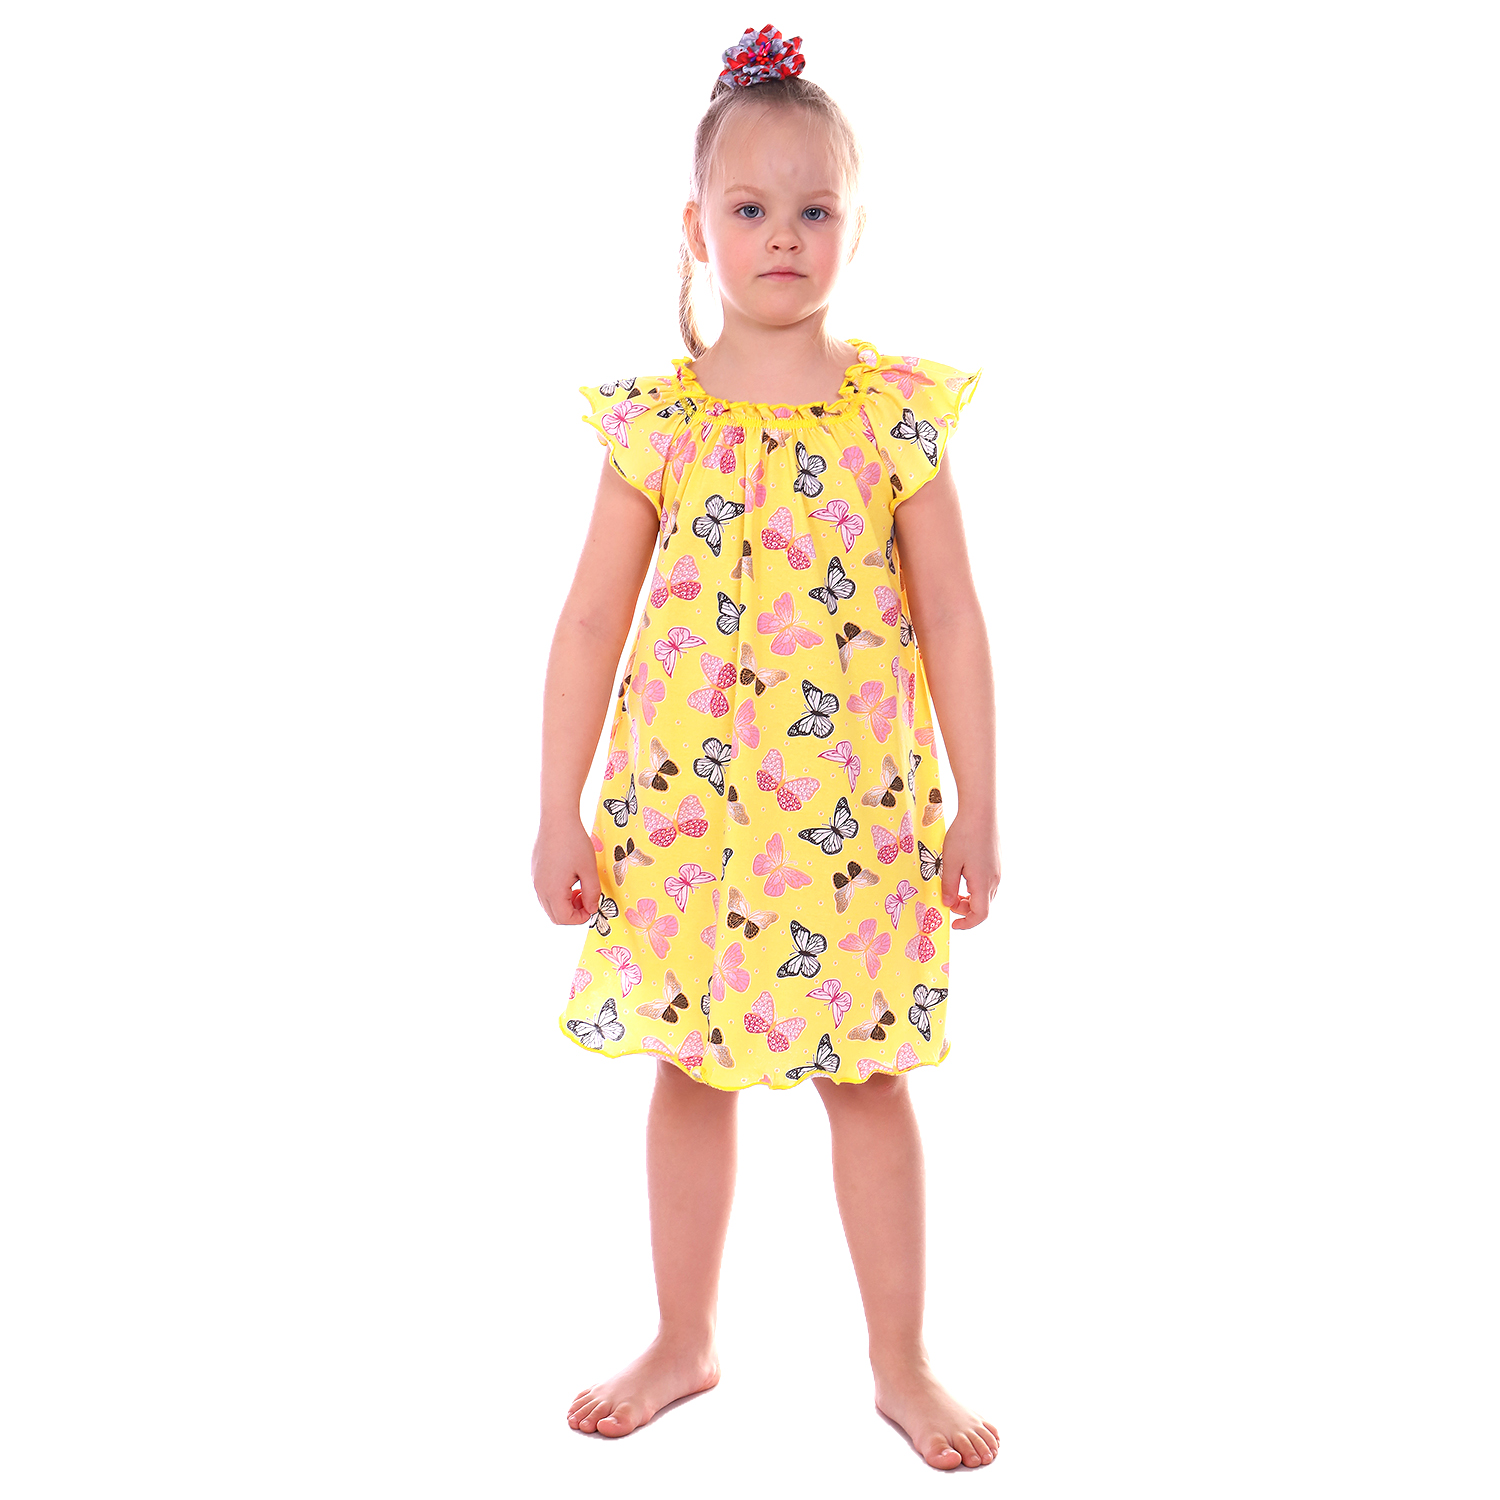 Сорочка ночная Детская Одежда 0003К/желтый2 - фото 1